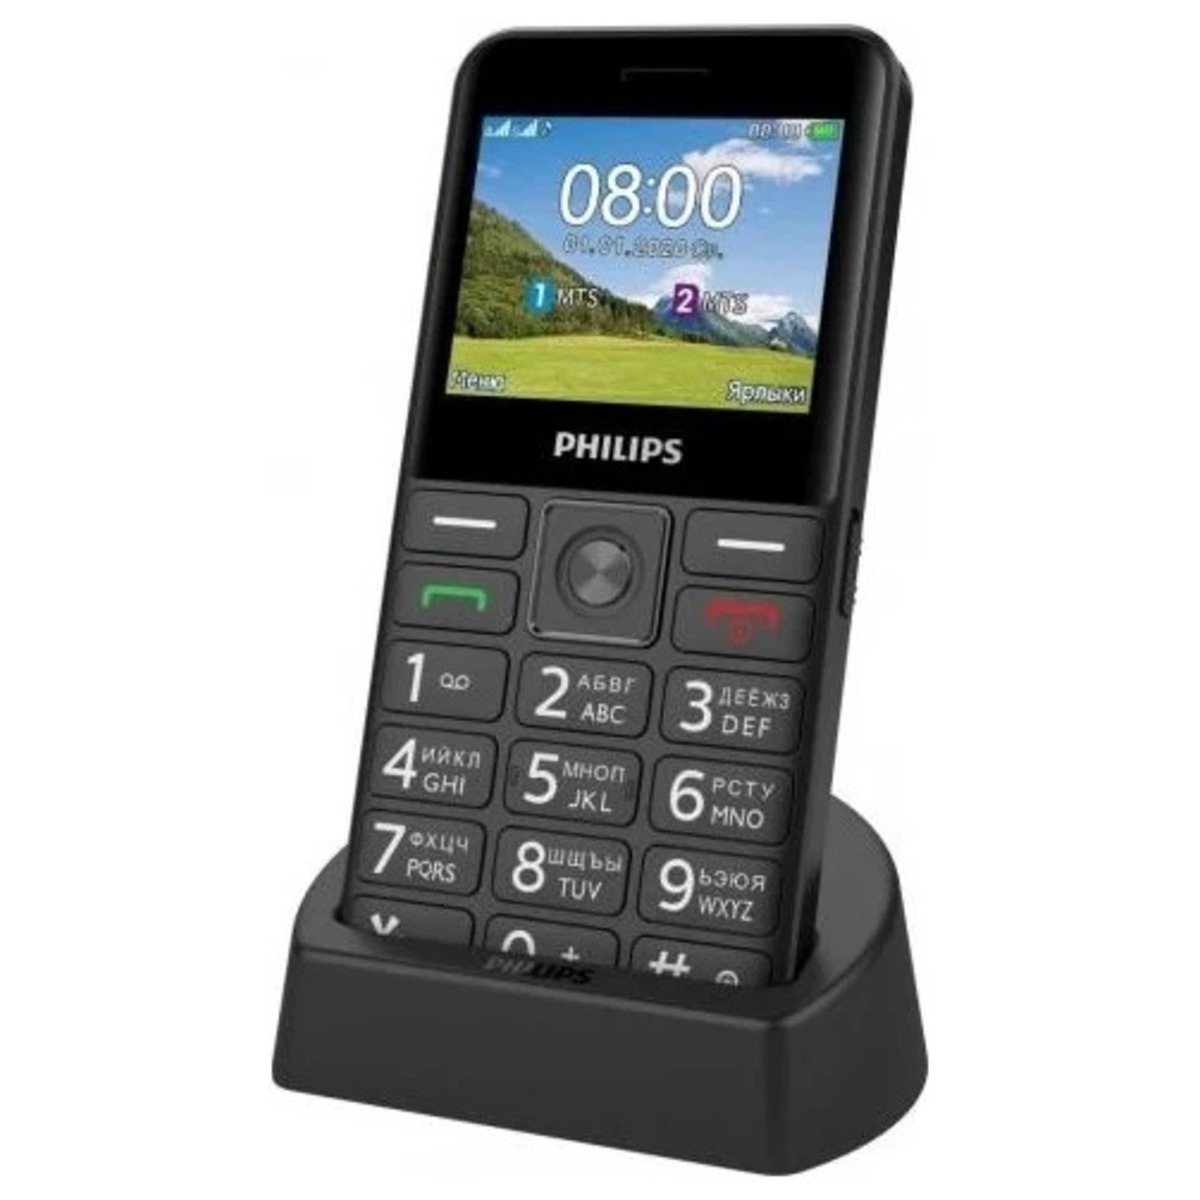 Купить Мобильный телефон Philips Xenium E207, черный 867000174127 в СПб  недорого | Выгодные цены на Мобильный телефон Philips Xenium E207, черный  867000174127, покупка в кредит (Артикул 00275344)